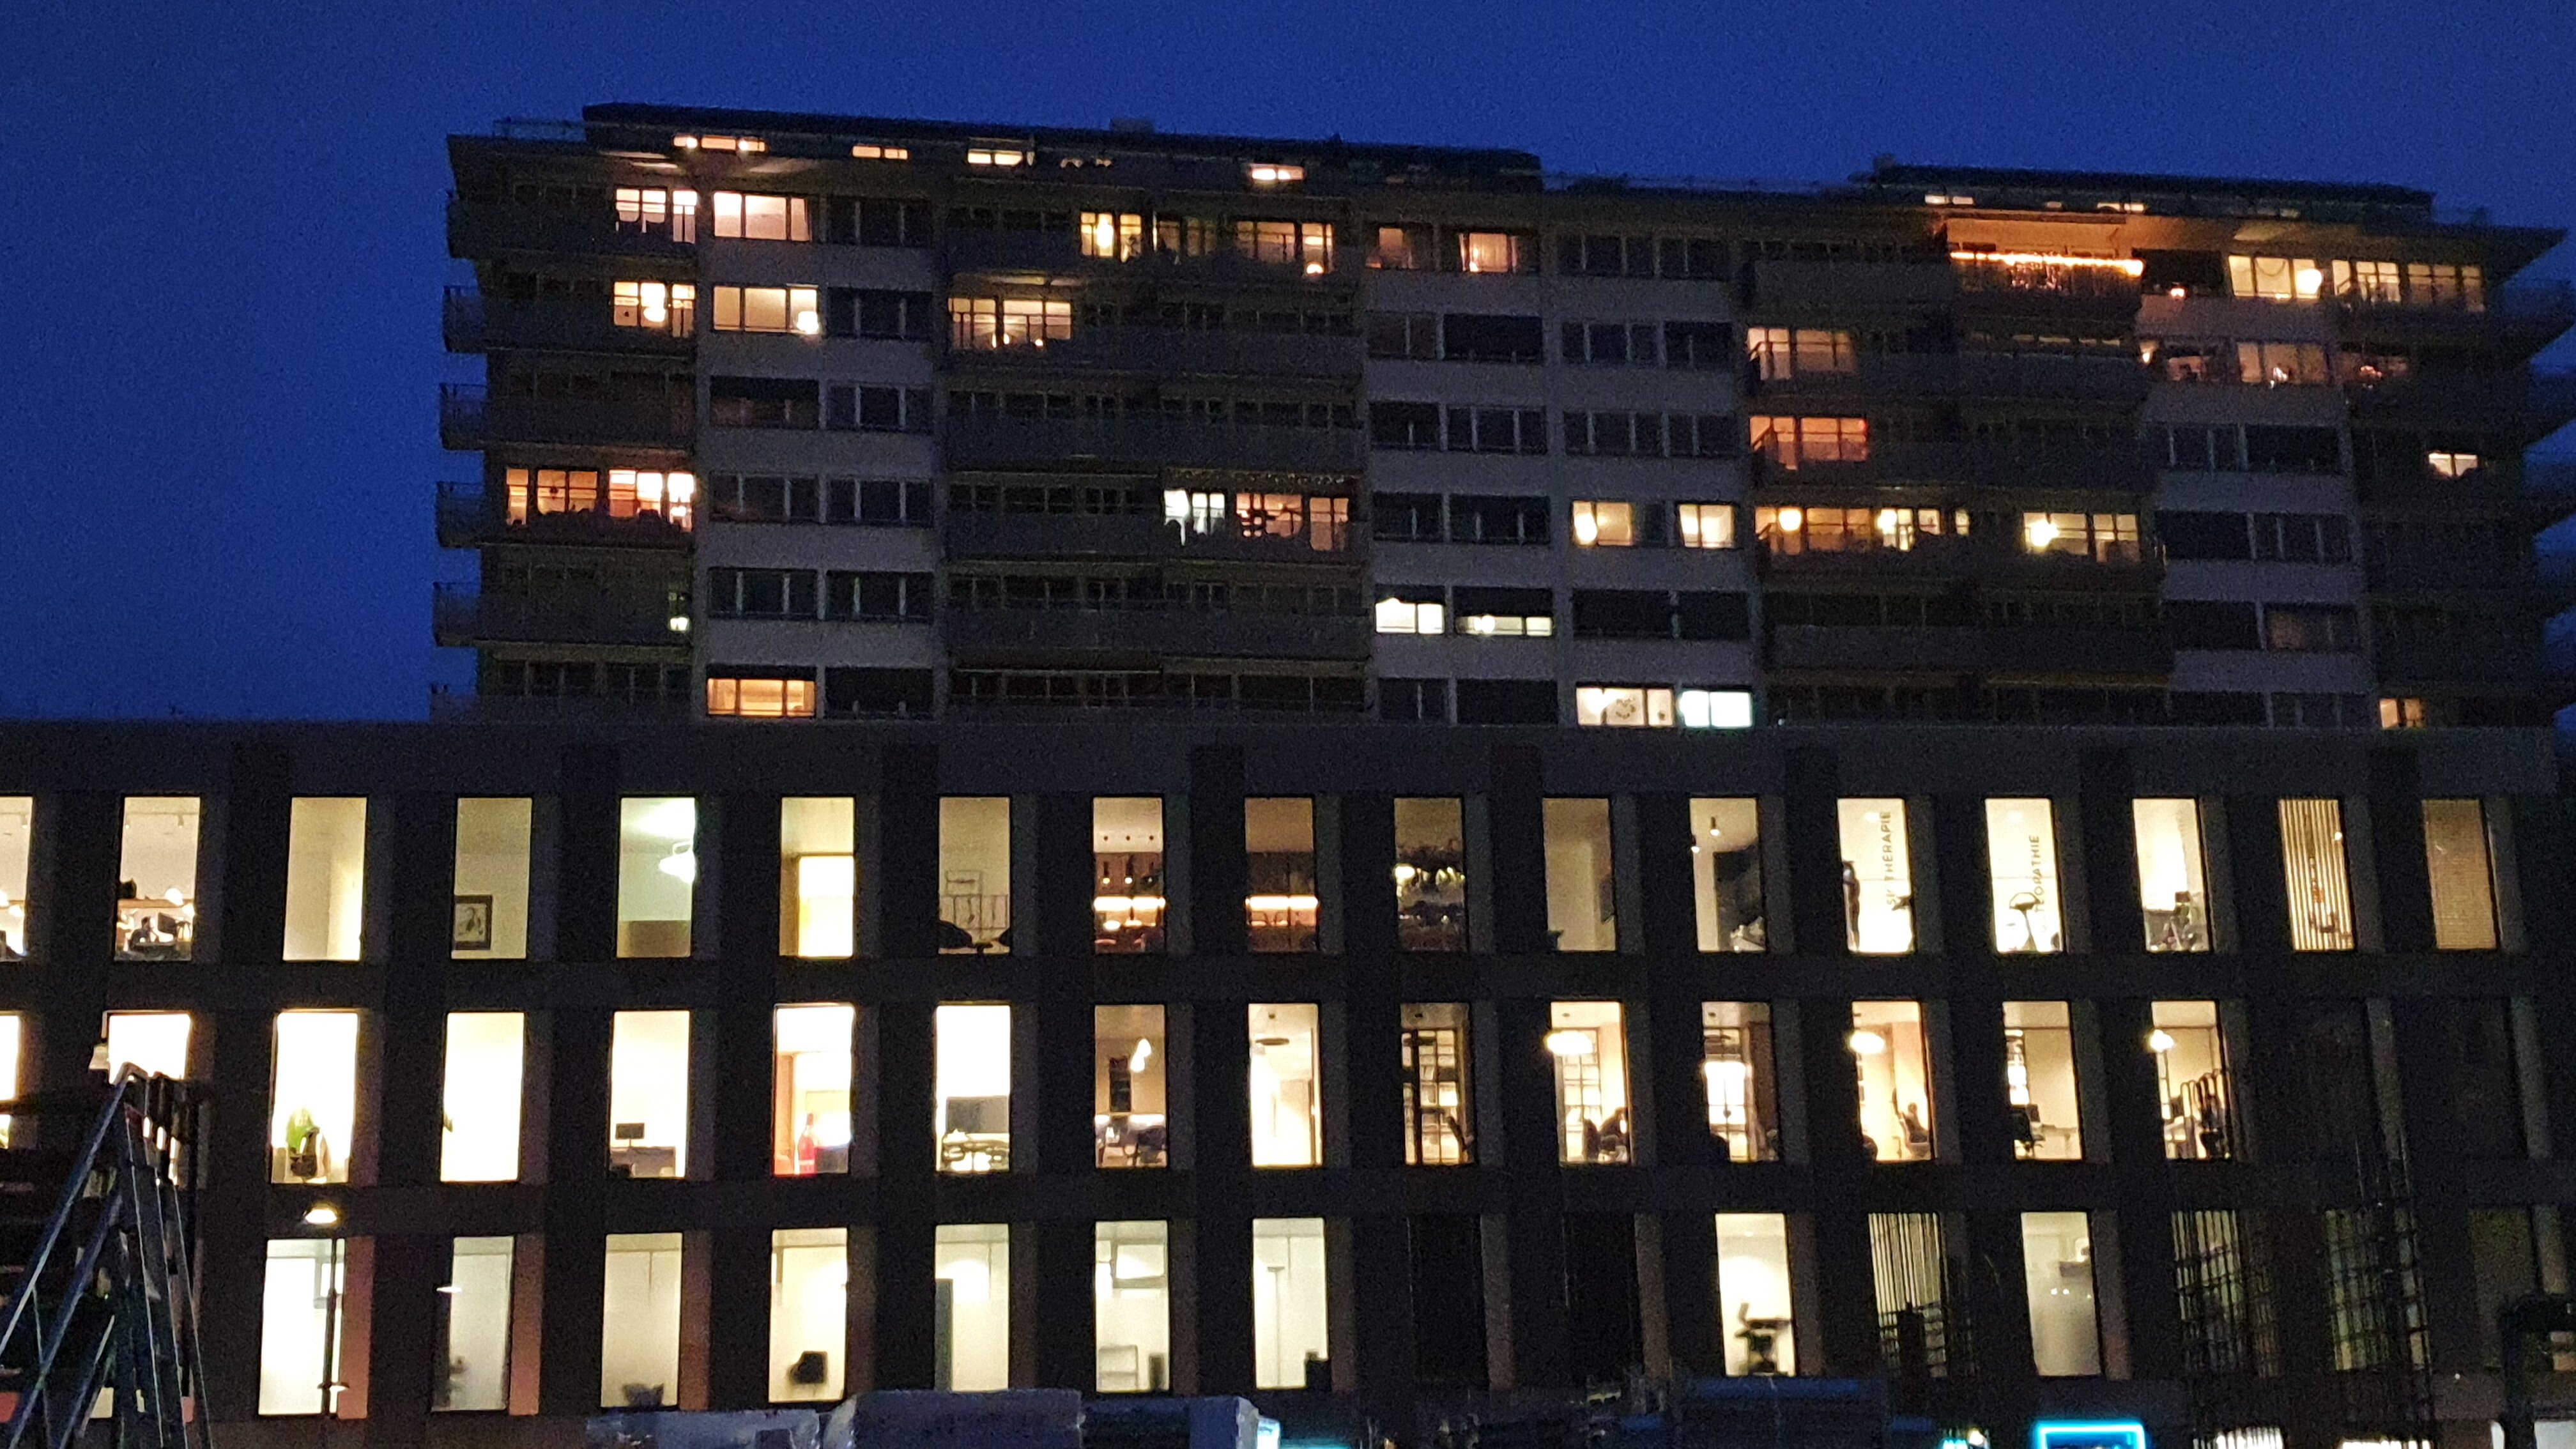 Nouveau bâtiment administratif, rue de la Gare des Eaux-Vives. Photo : L. Romano